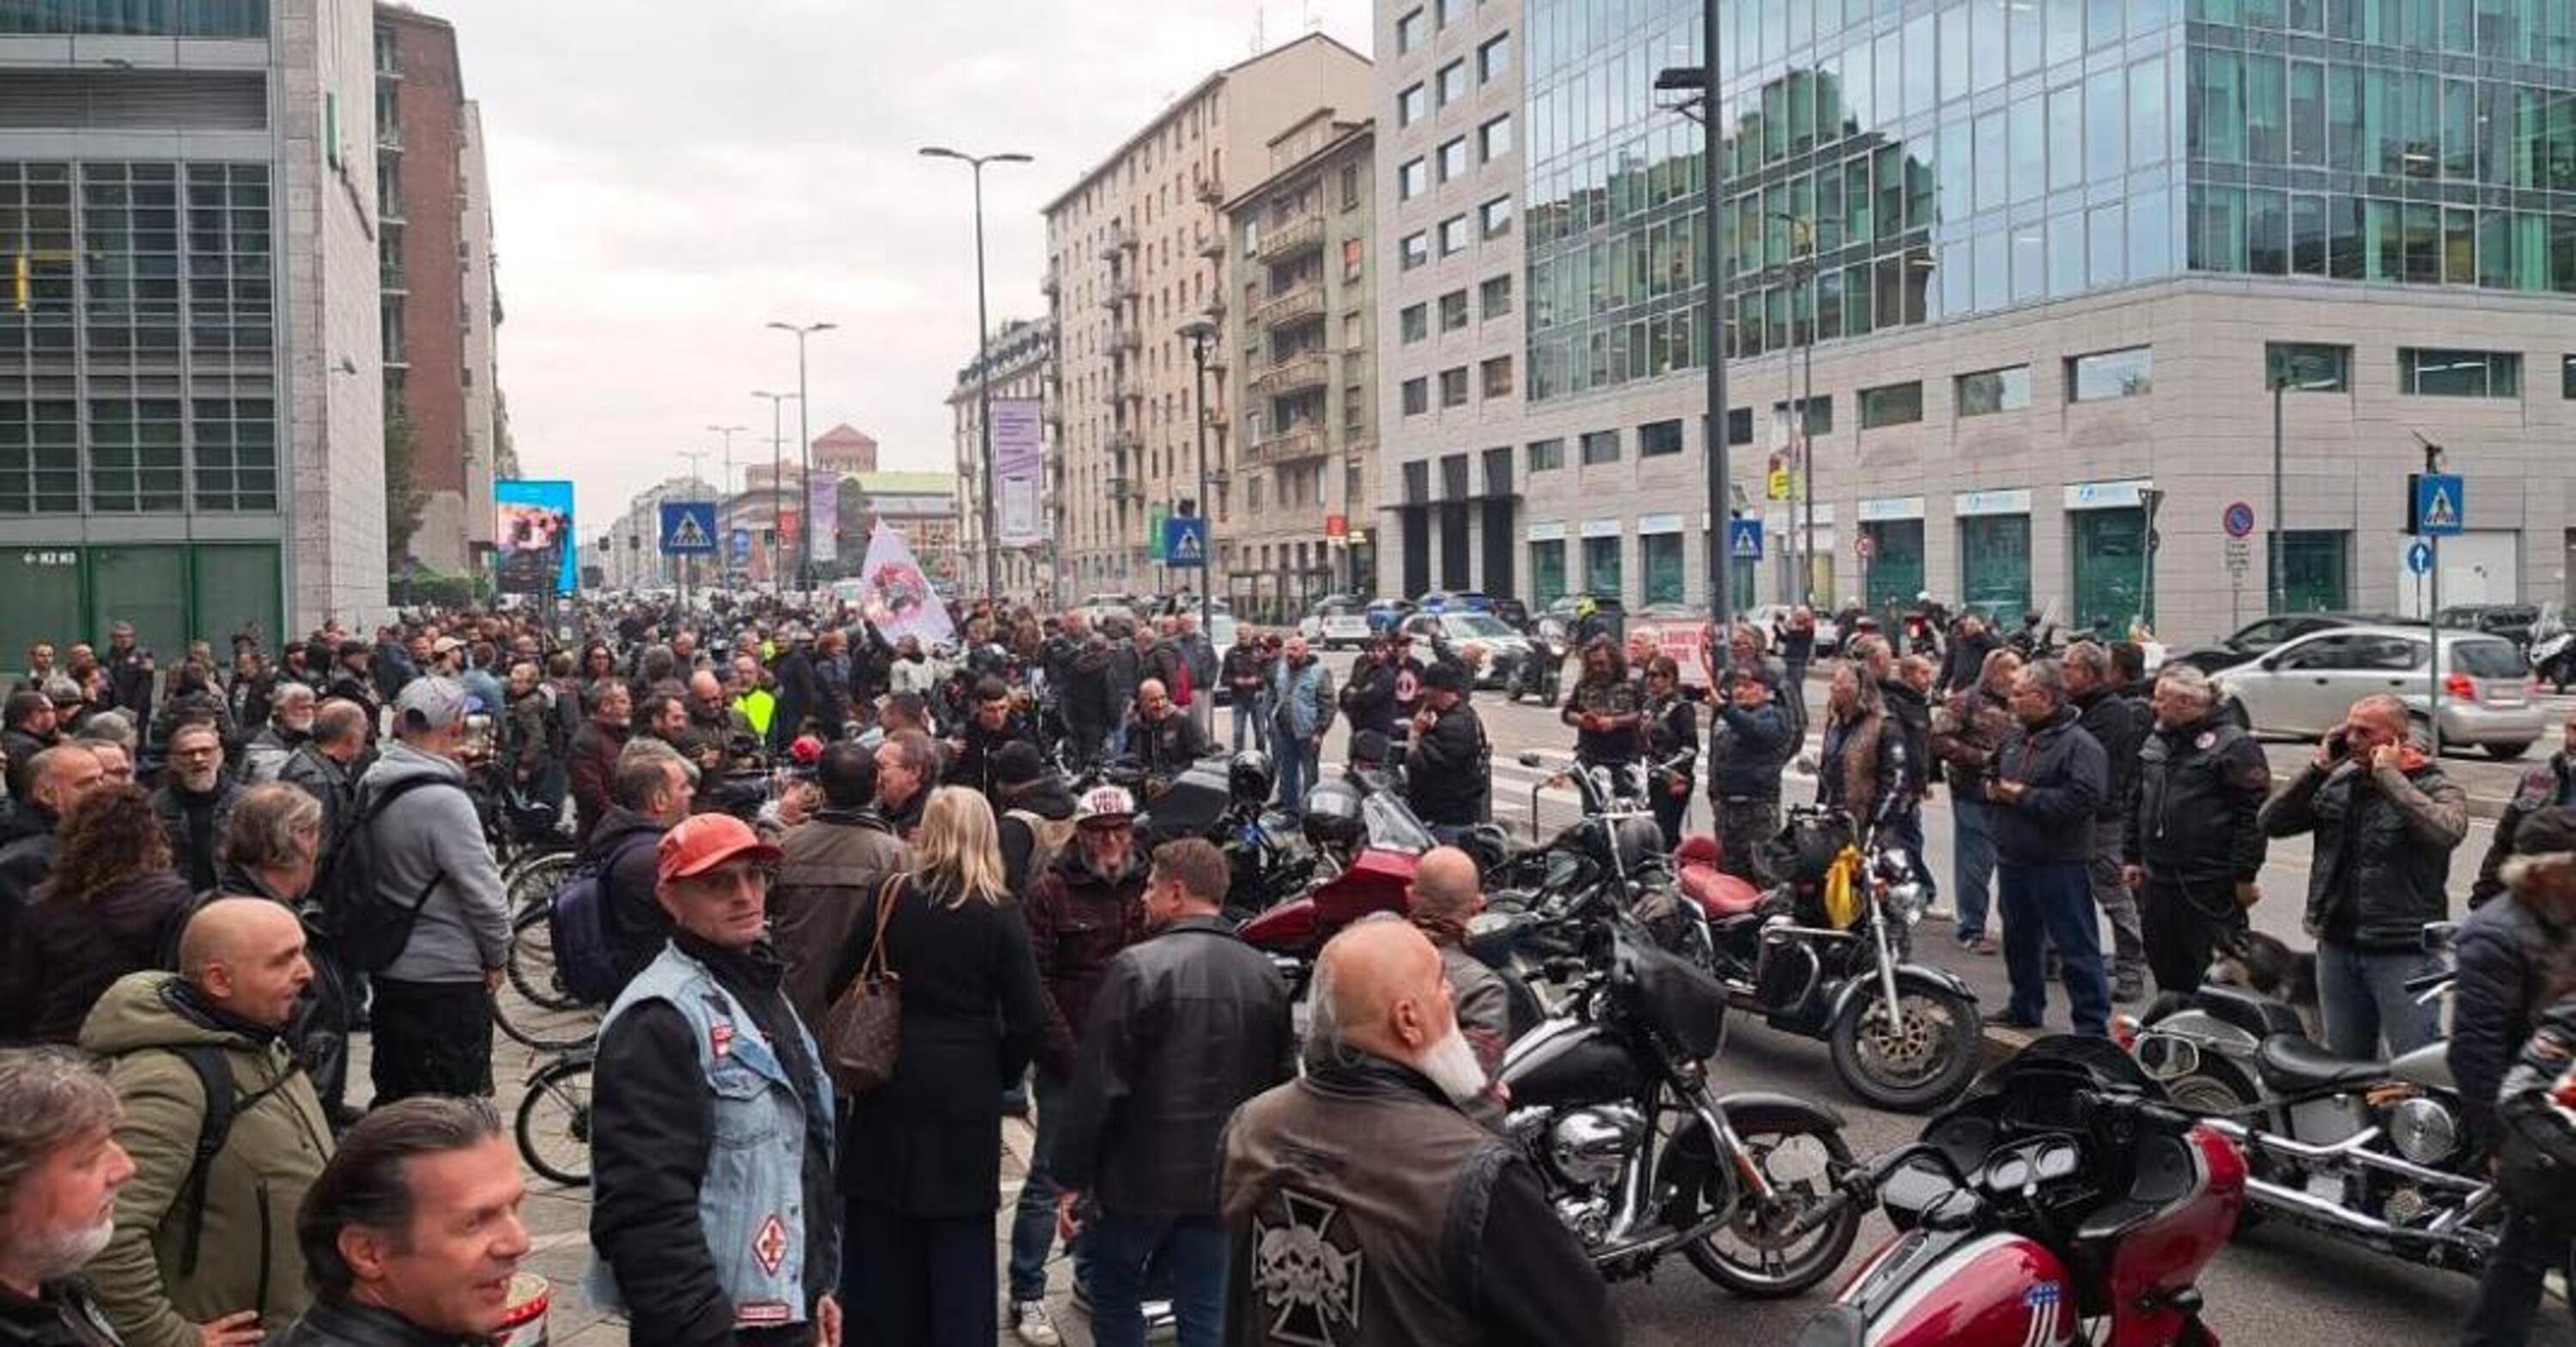 Motociclisti in protesta a Milano: 600 moto in corteo fino alla regione. Ecco perch&eacute;